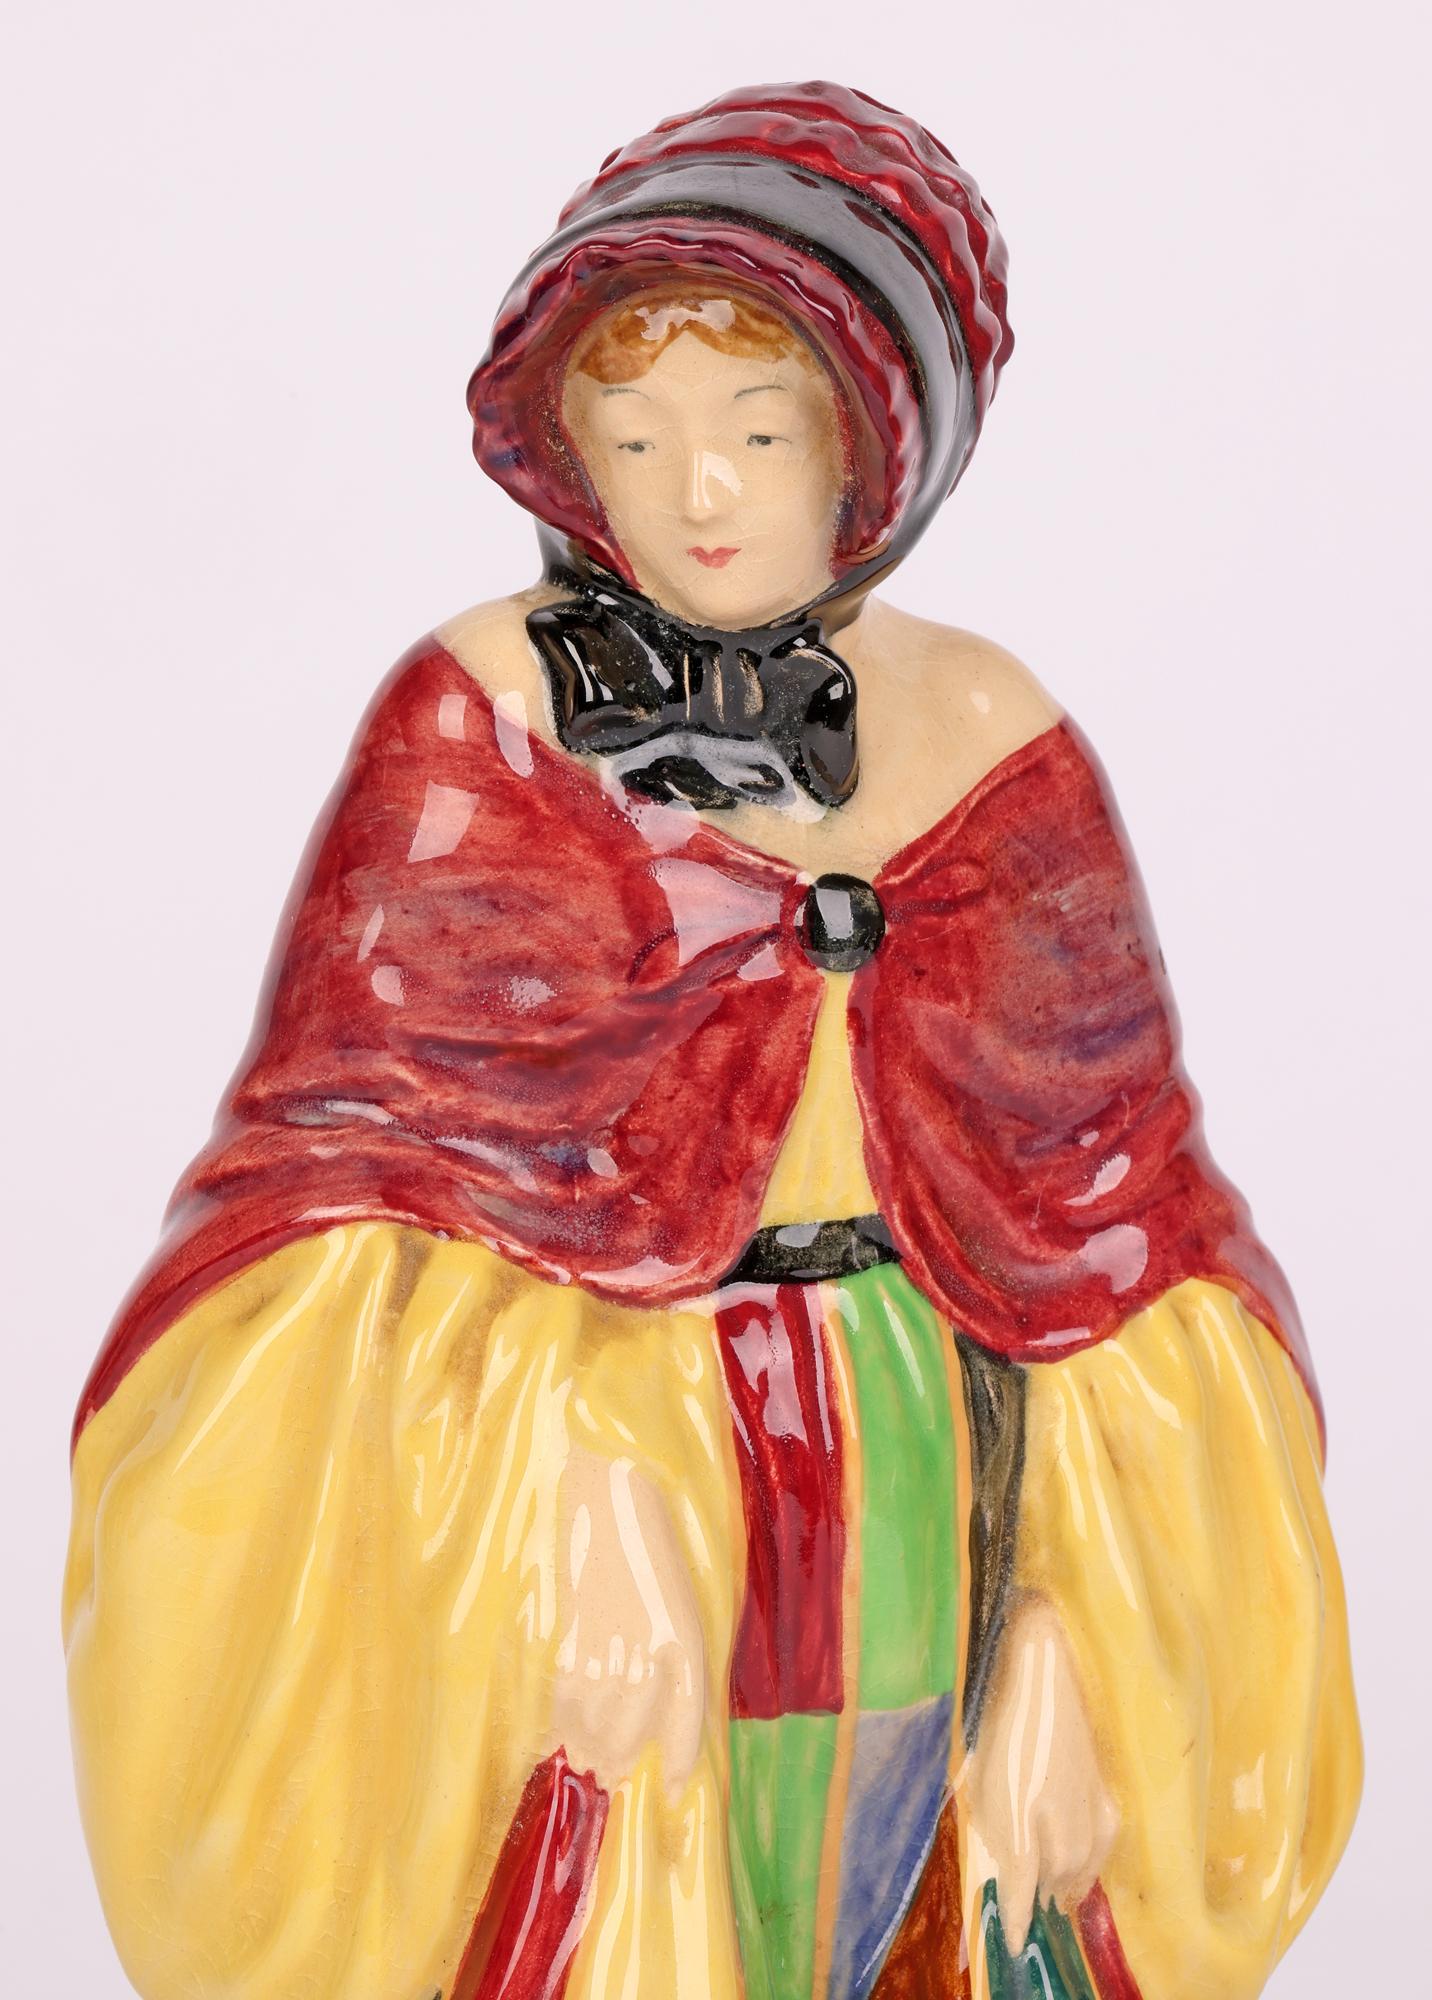 Une belle et élégante figurine Art déco de Royal Doulton intitulée The Parsons Daughter, conçue par Harry Tittensor et datant d'entre 1929 et 1938. La figurine creuse légèrement empotée porte une cape courte fermée sur le devant par-dessus une robe